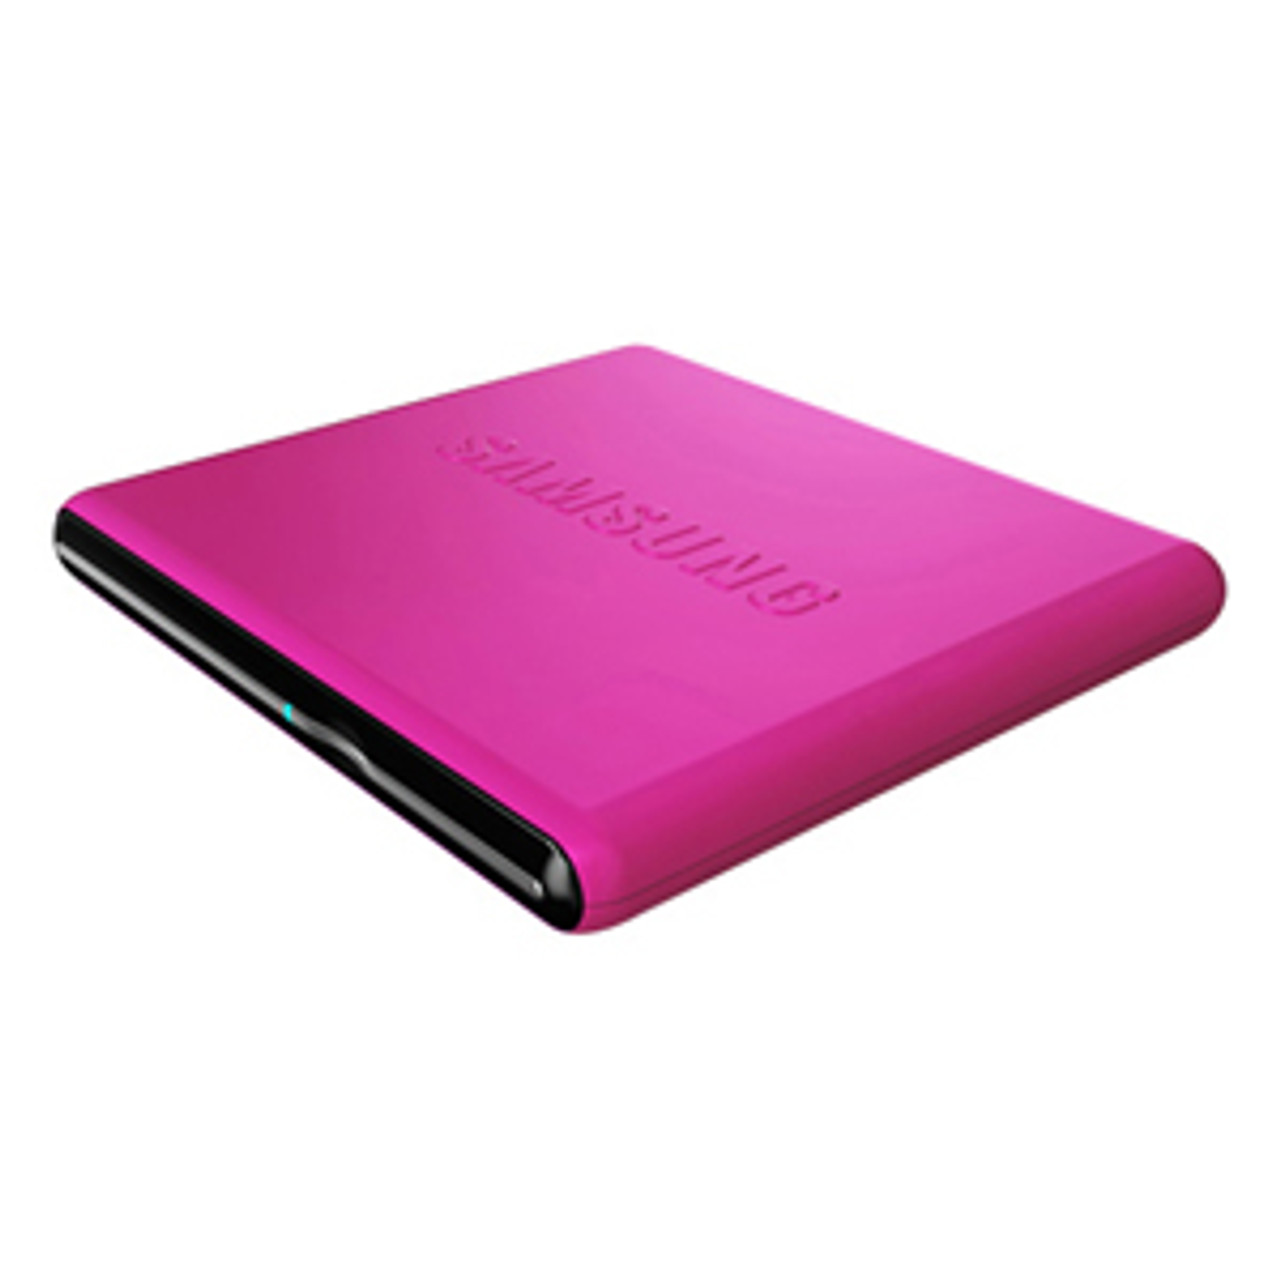 SE-S084D/TSPS - Samsung SE-S084D External dvd-Writer -  Pack - Pink - dvd-ram